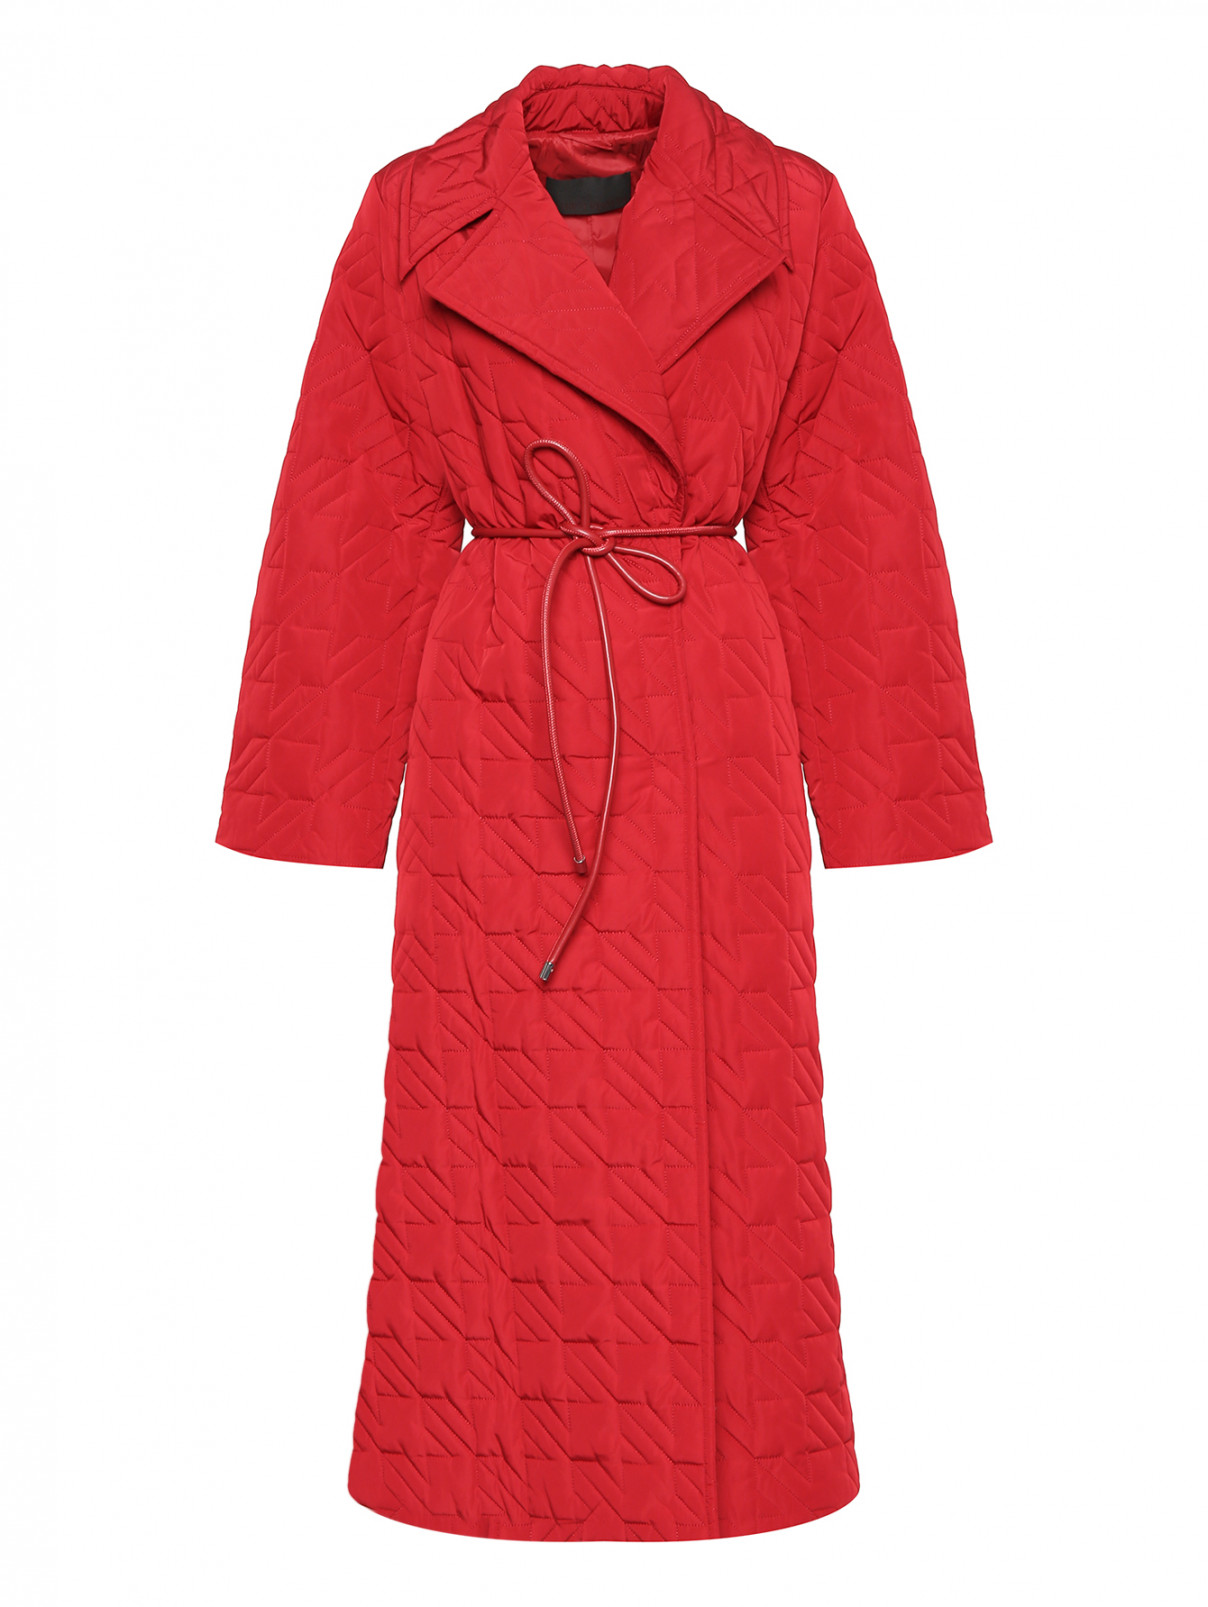 Стеганое пальто с поясом Marina Rinaldi  –  Общий вид  – Цвет:  Красный